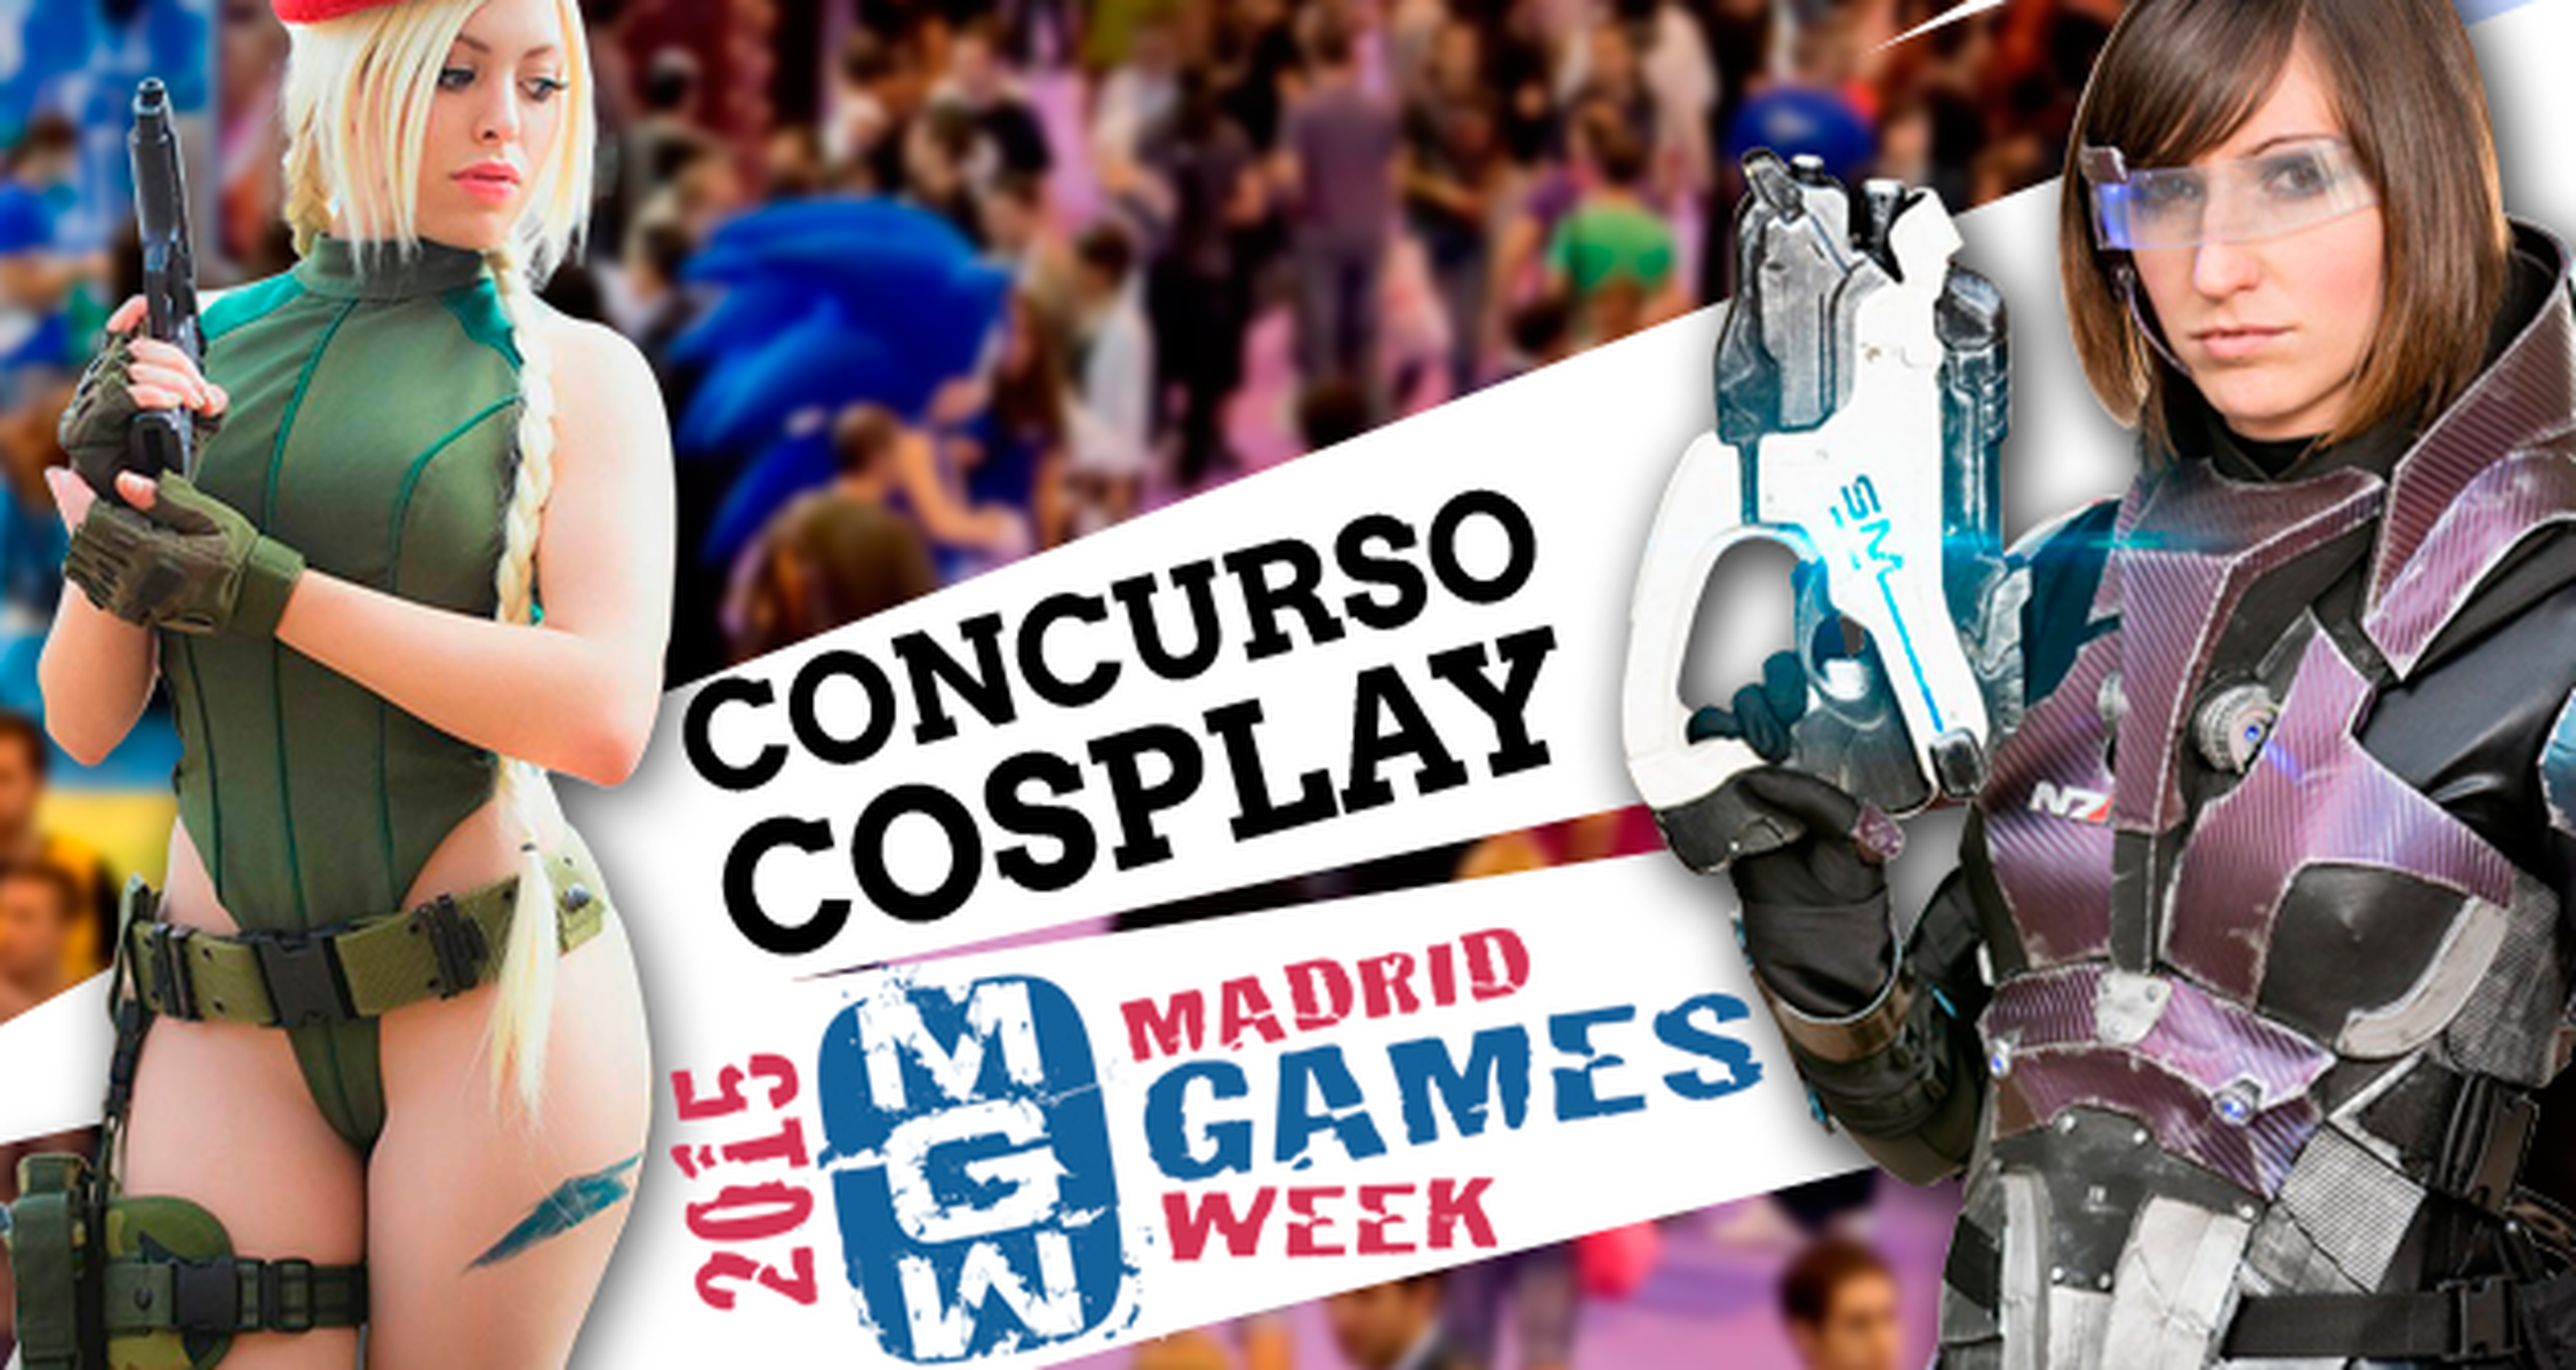 Concurso de cosplay en Madrid Games Week 2015 ¡Inscríbete y gana grandes premios!